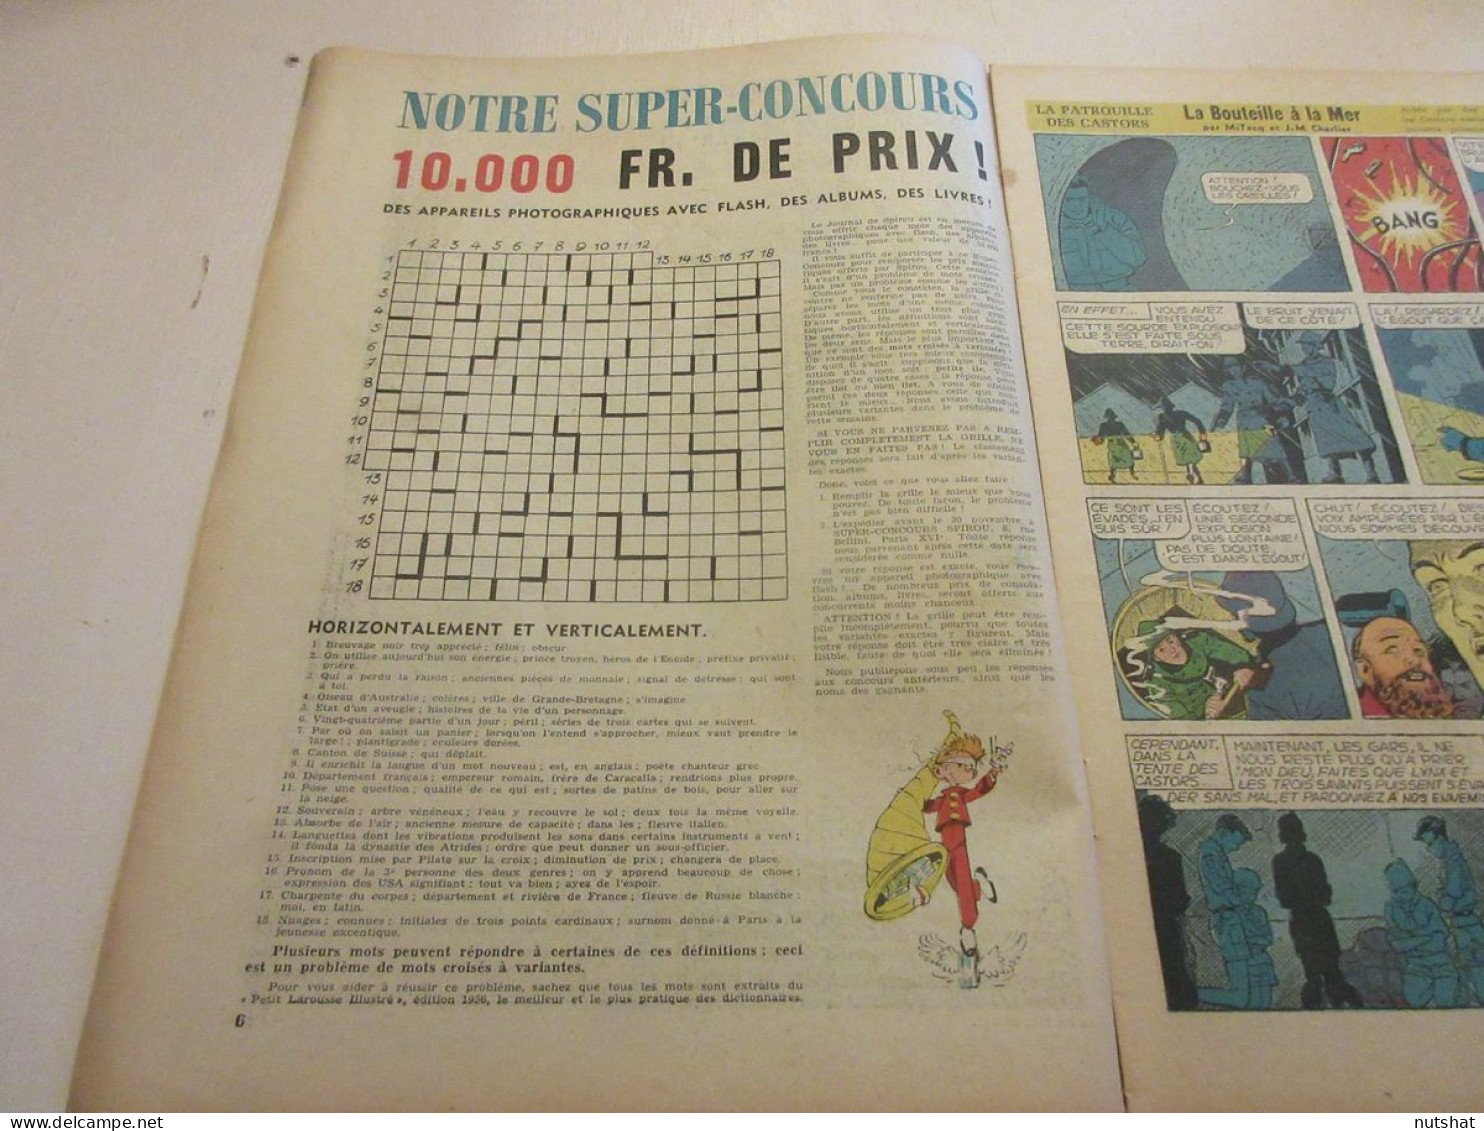 SPIROU 1022 14.11.1957 SUPER CONCOURS VOILE Le VAURIEN TENNIS Pierre DARMON      - Spirou Magazine